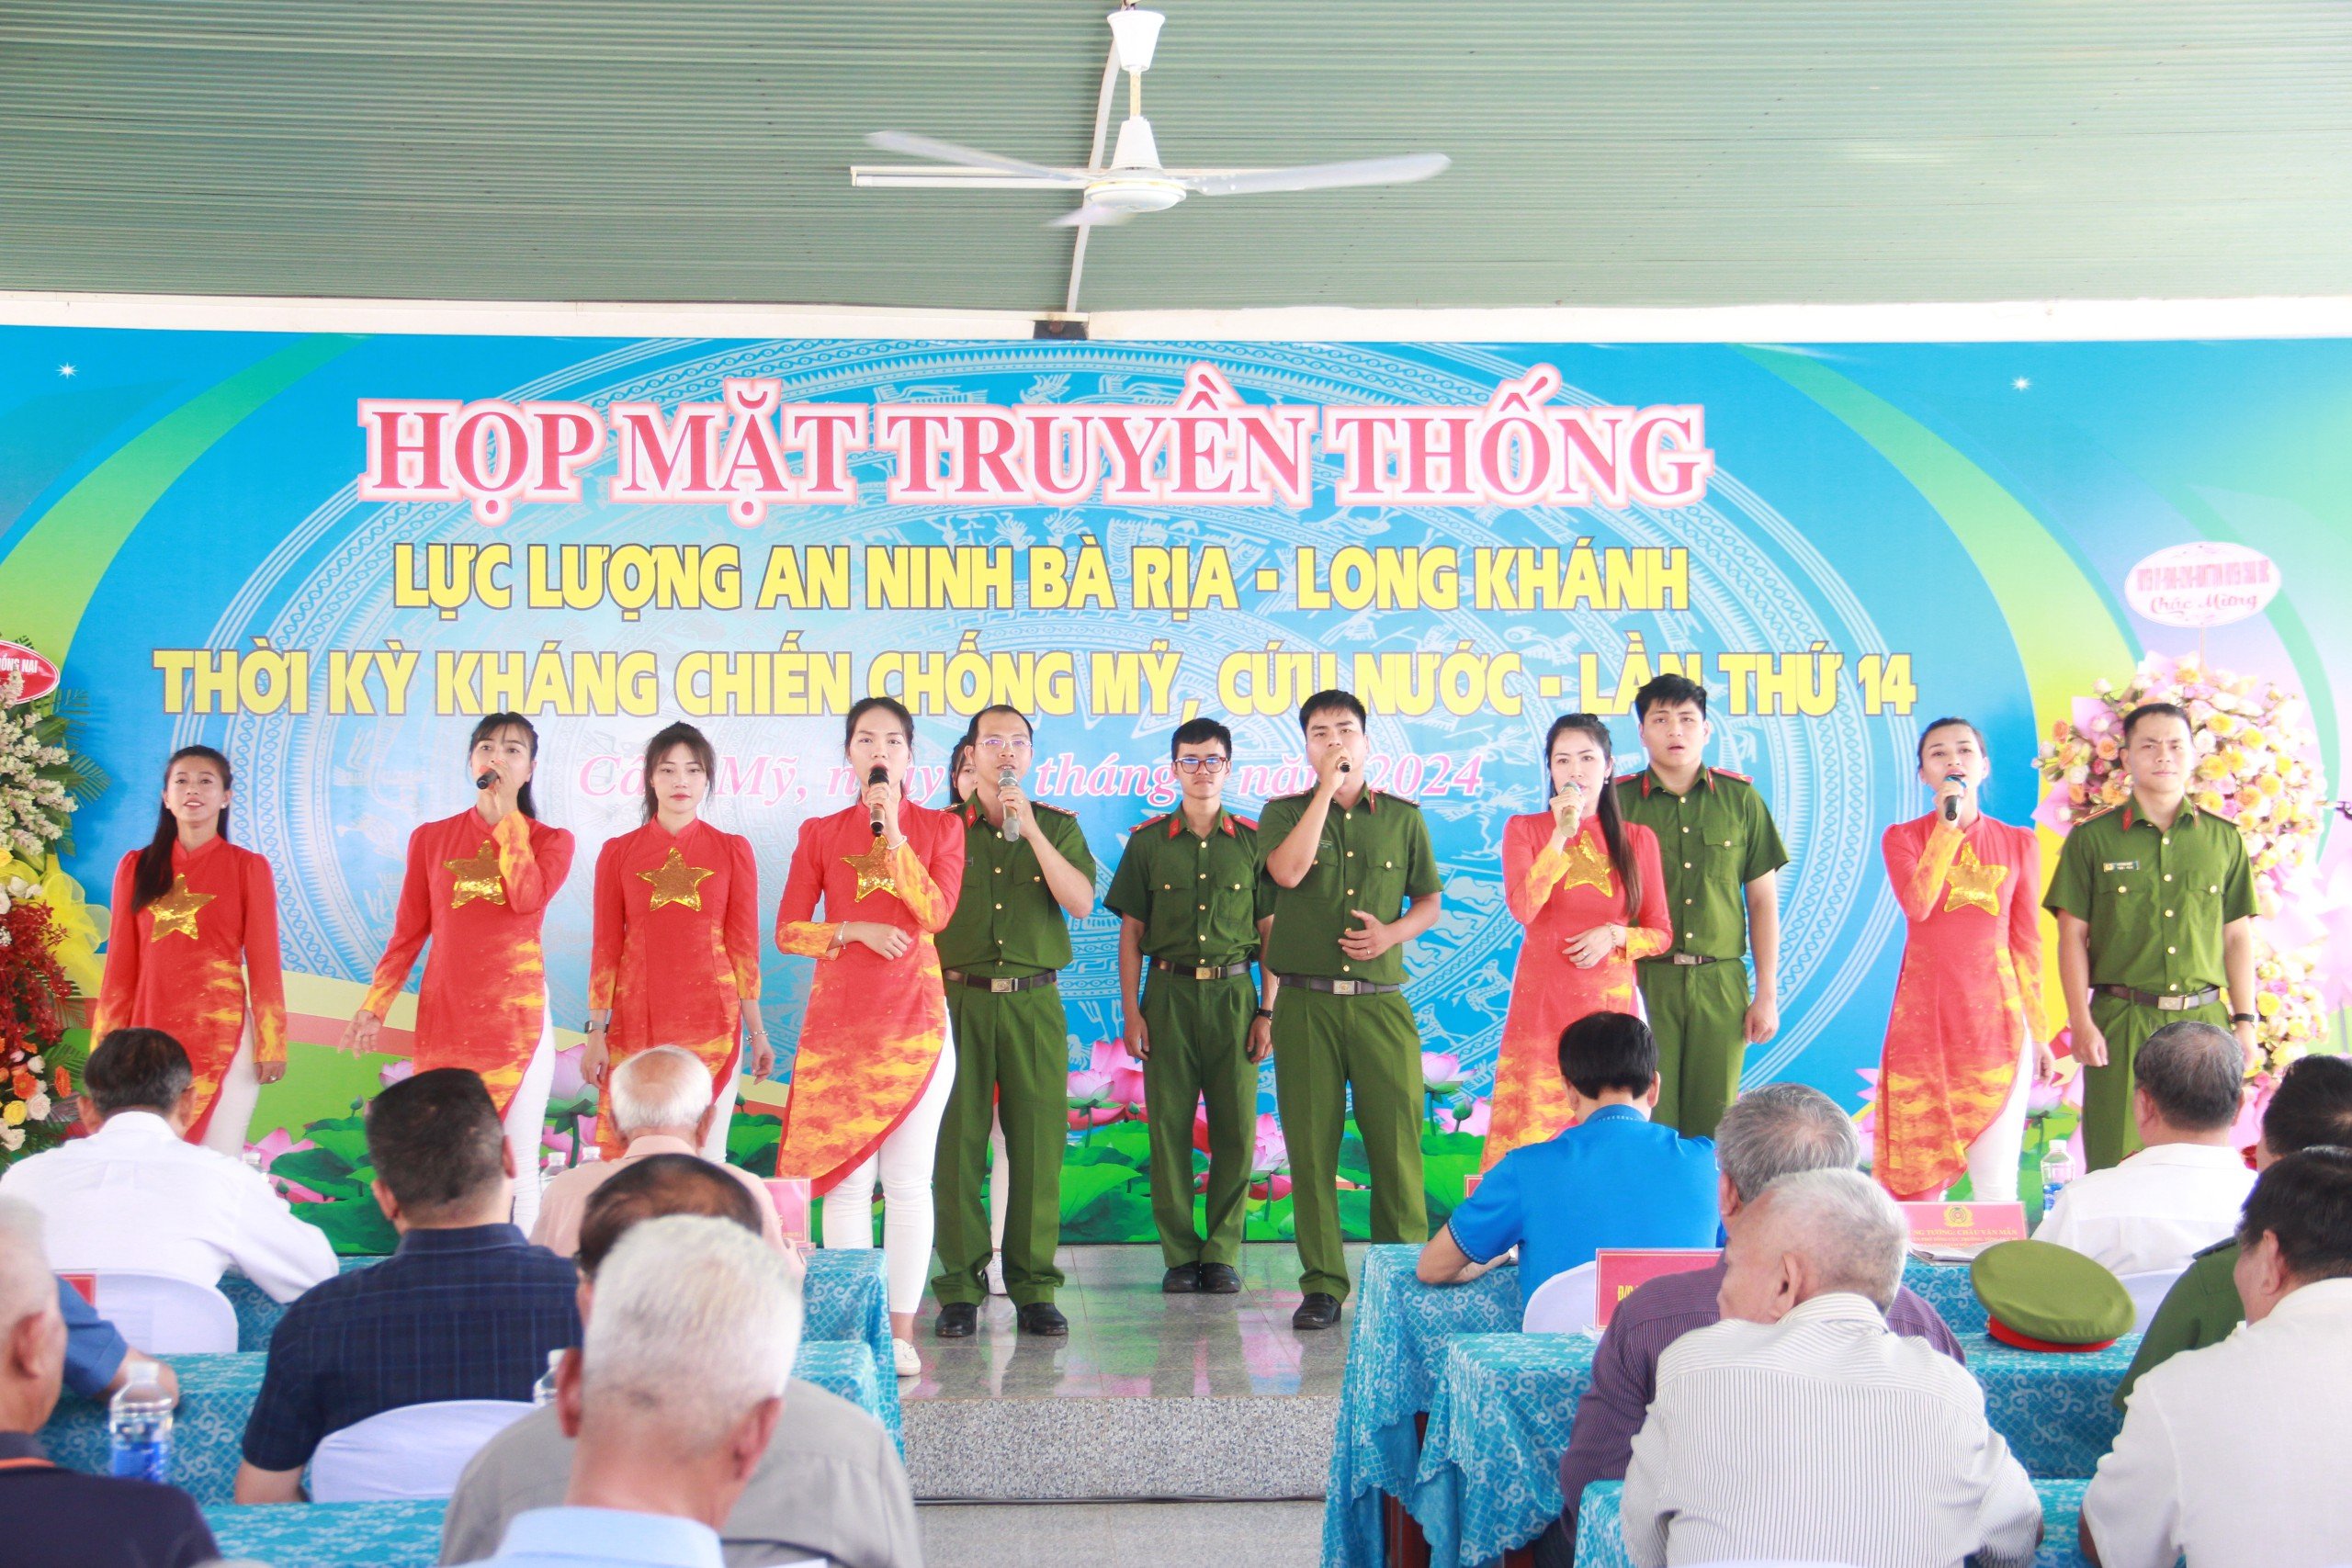 Nhiều tiết mục văn nghệ nhằm kỷ niệm buổi họp mặt truyền thống lực lượng An ninh Bà Rịa - Long Khánh lần thứ 14.